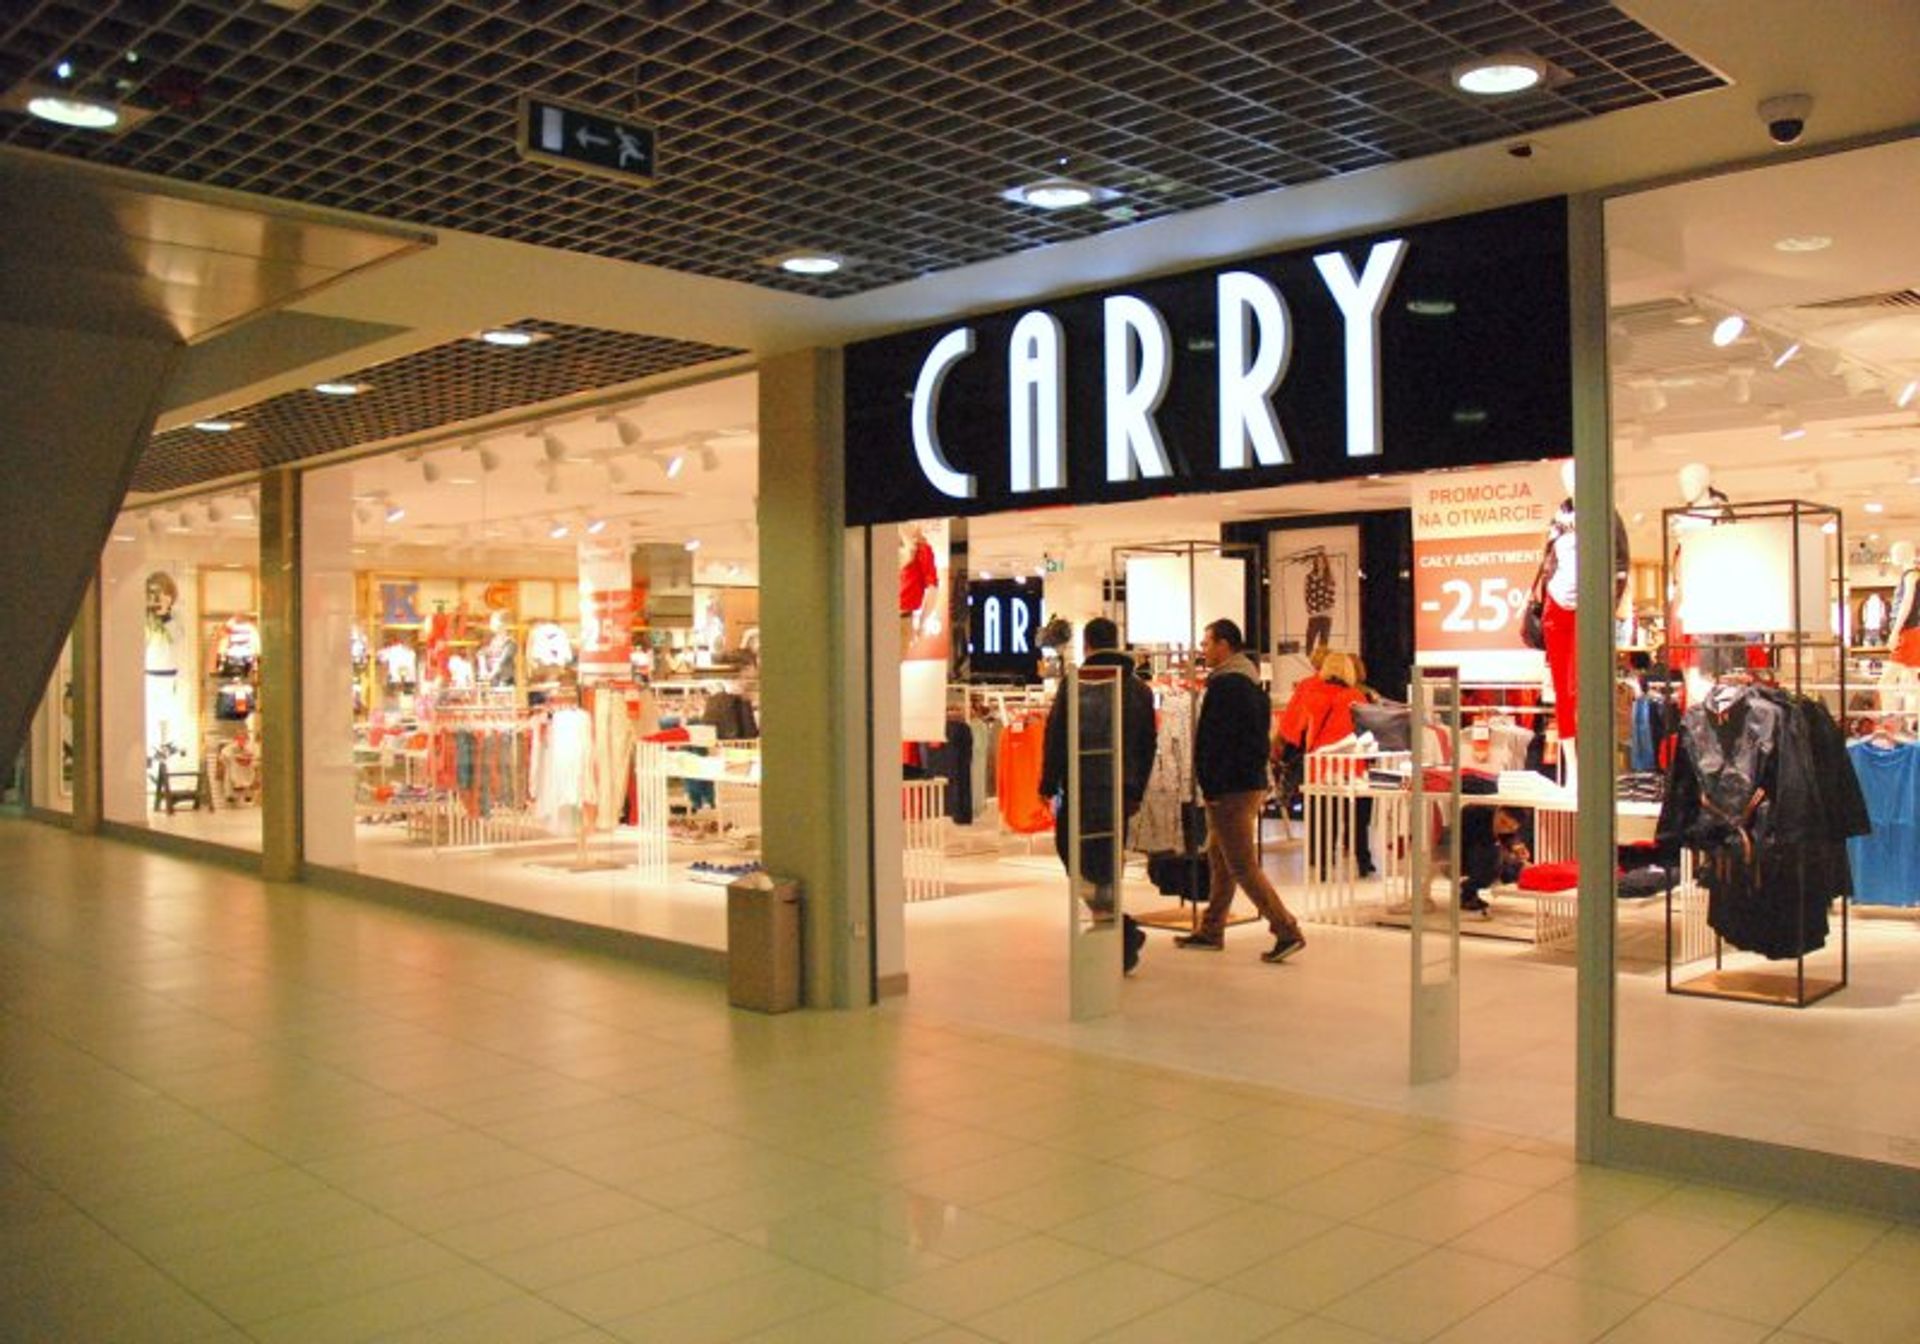  Salon Carry w Centrum Handlowym Rywal w Białej Podlaskiej